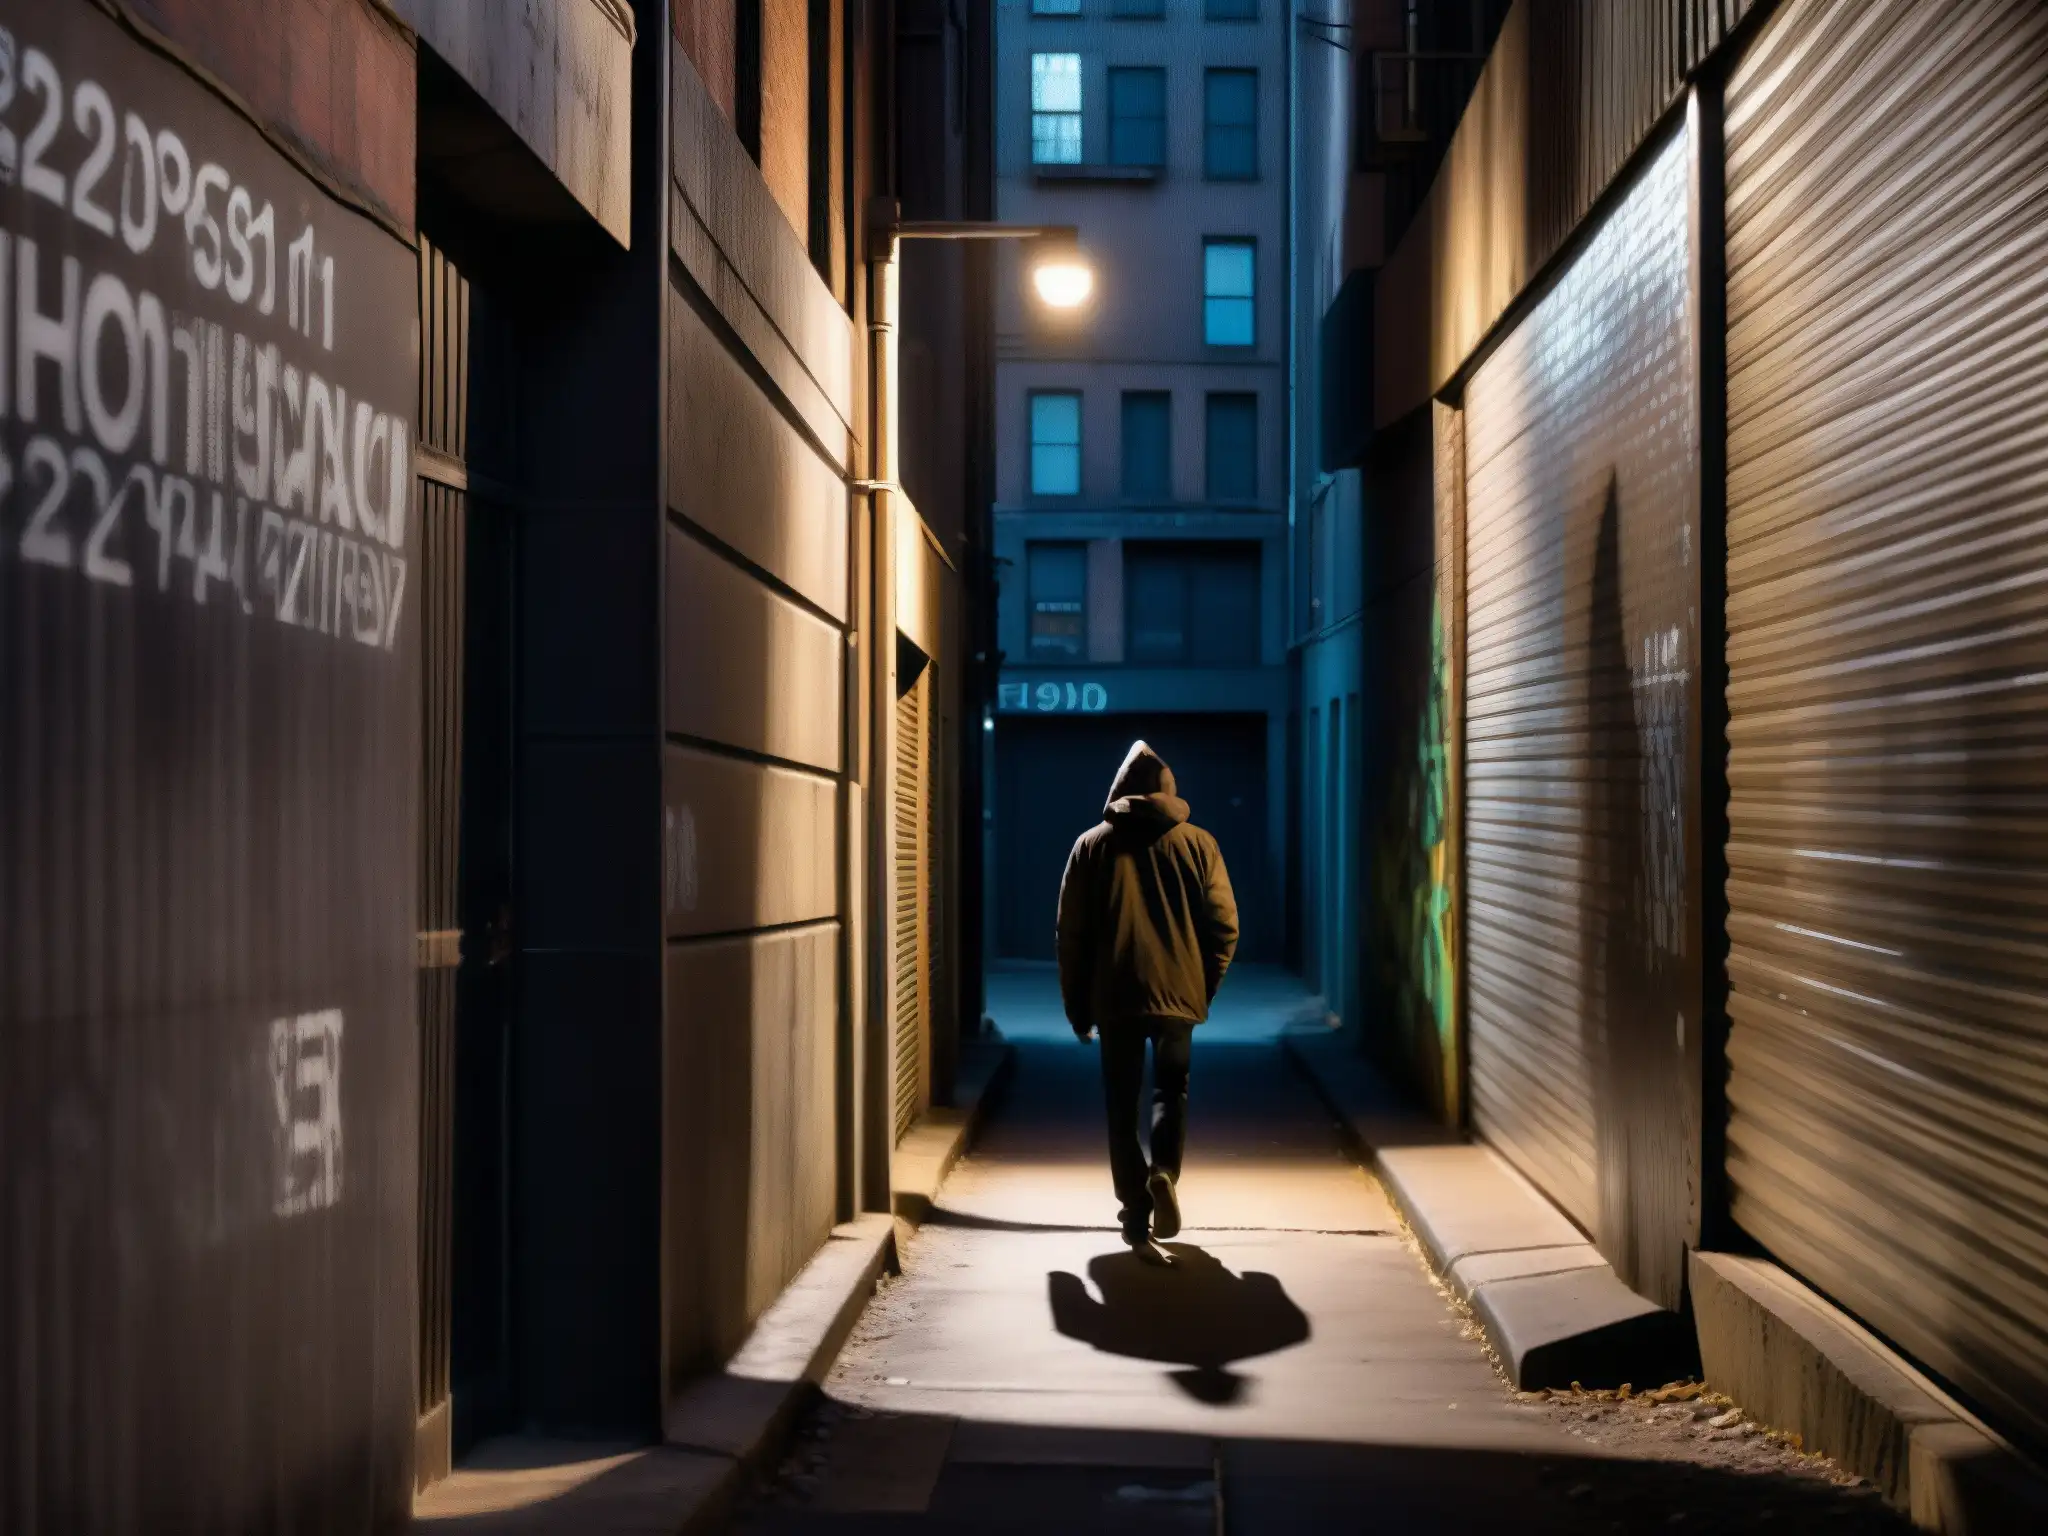 Un callejón sombrío y misterioso con graffiti, luces parpadeantes y una figura solitaria